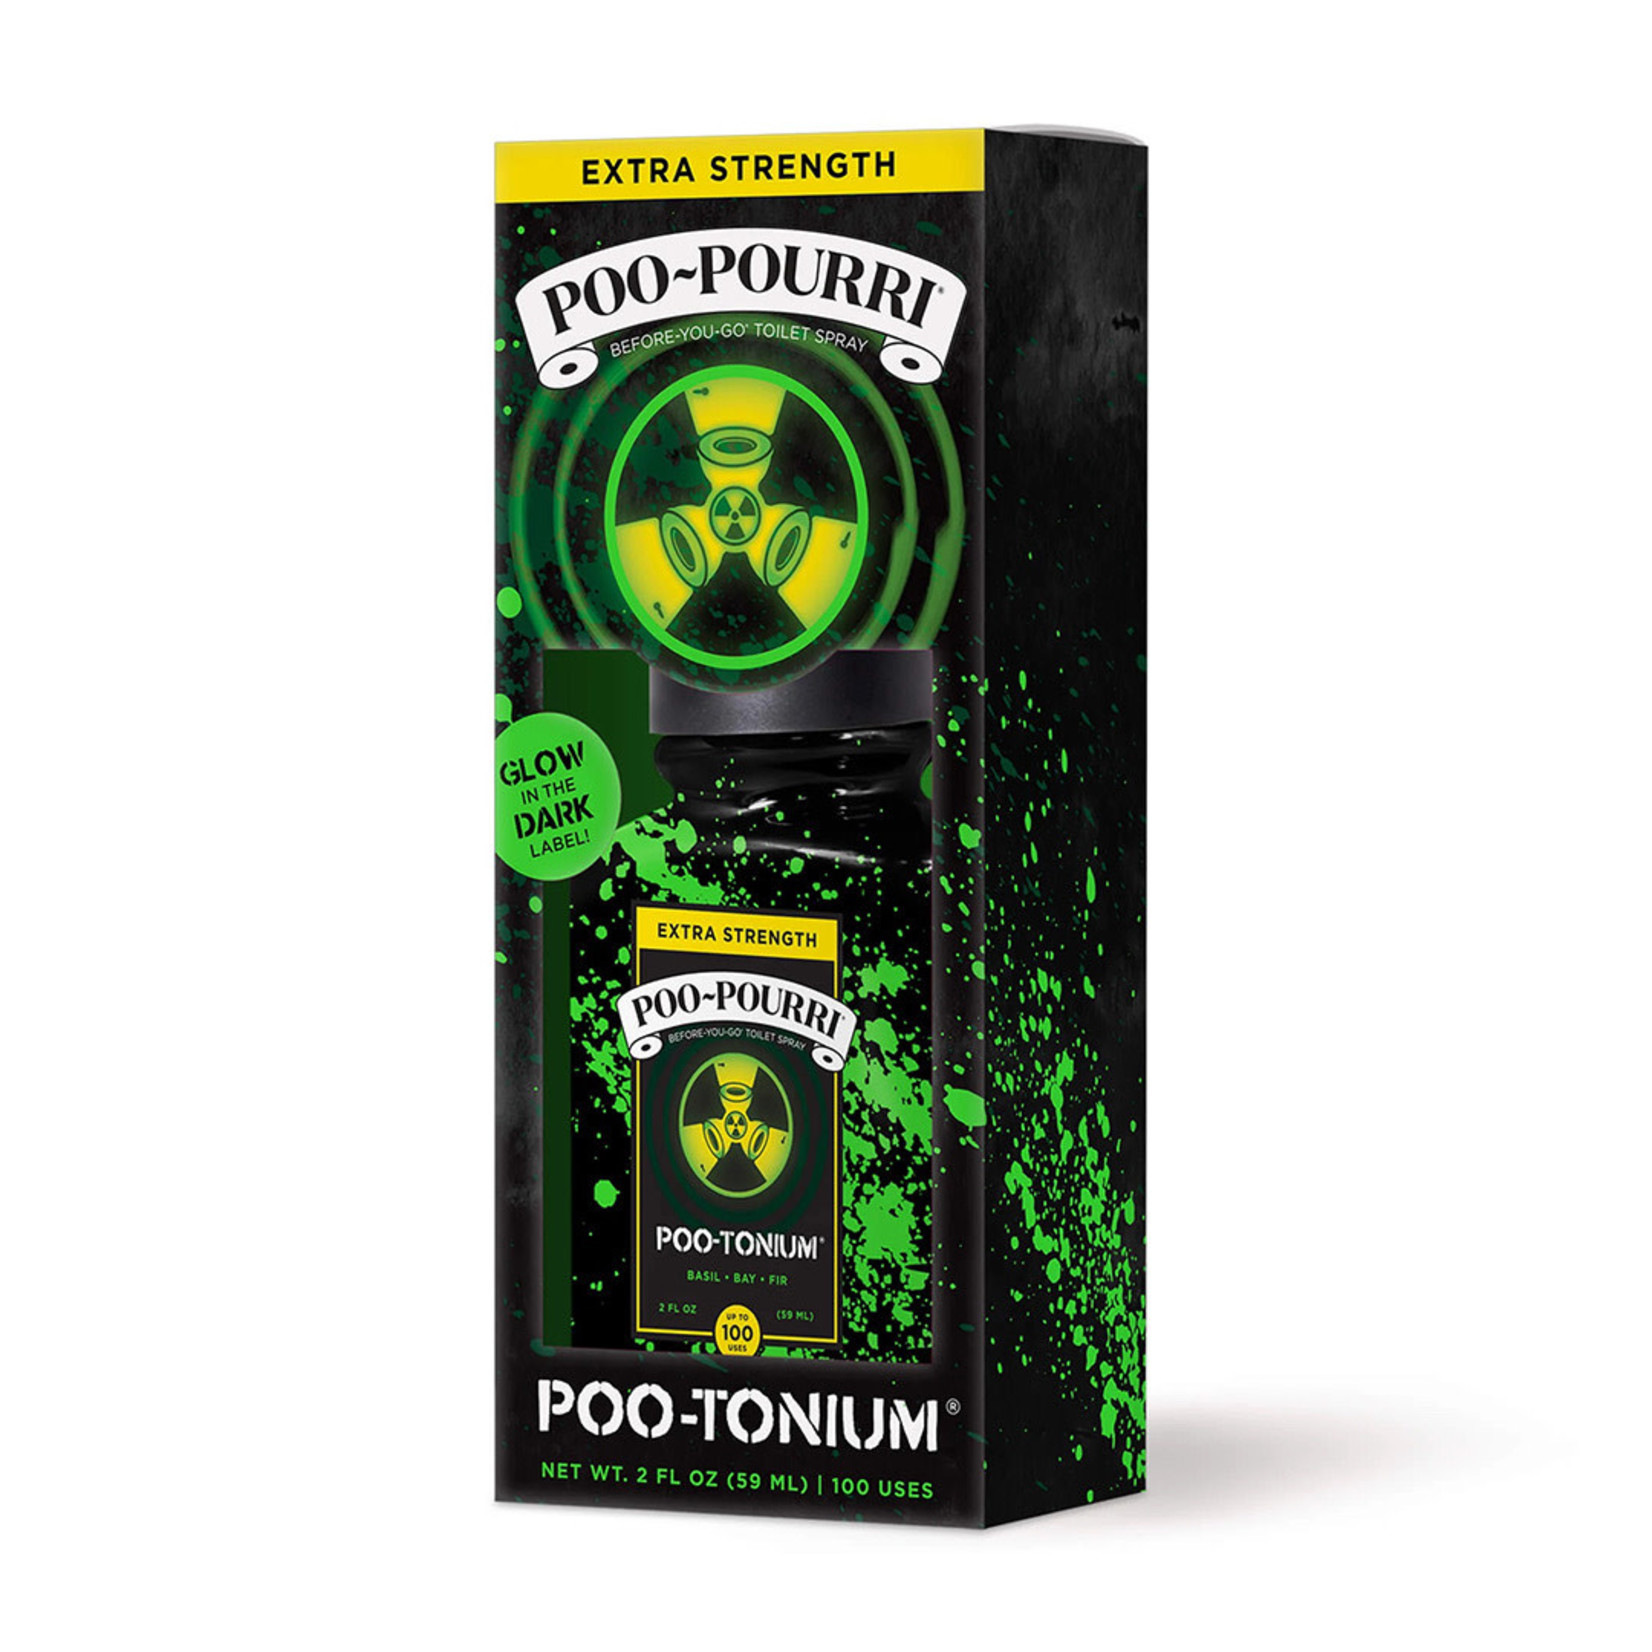 Pourri Poo-tonium - Poo-Pourri - 2oz